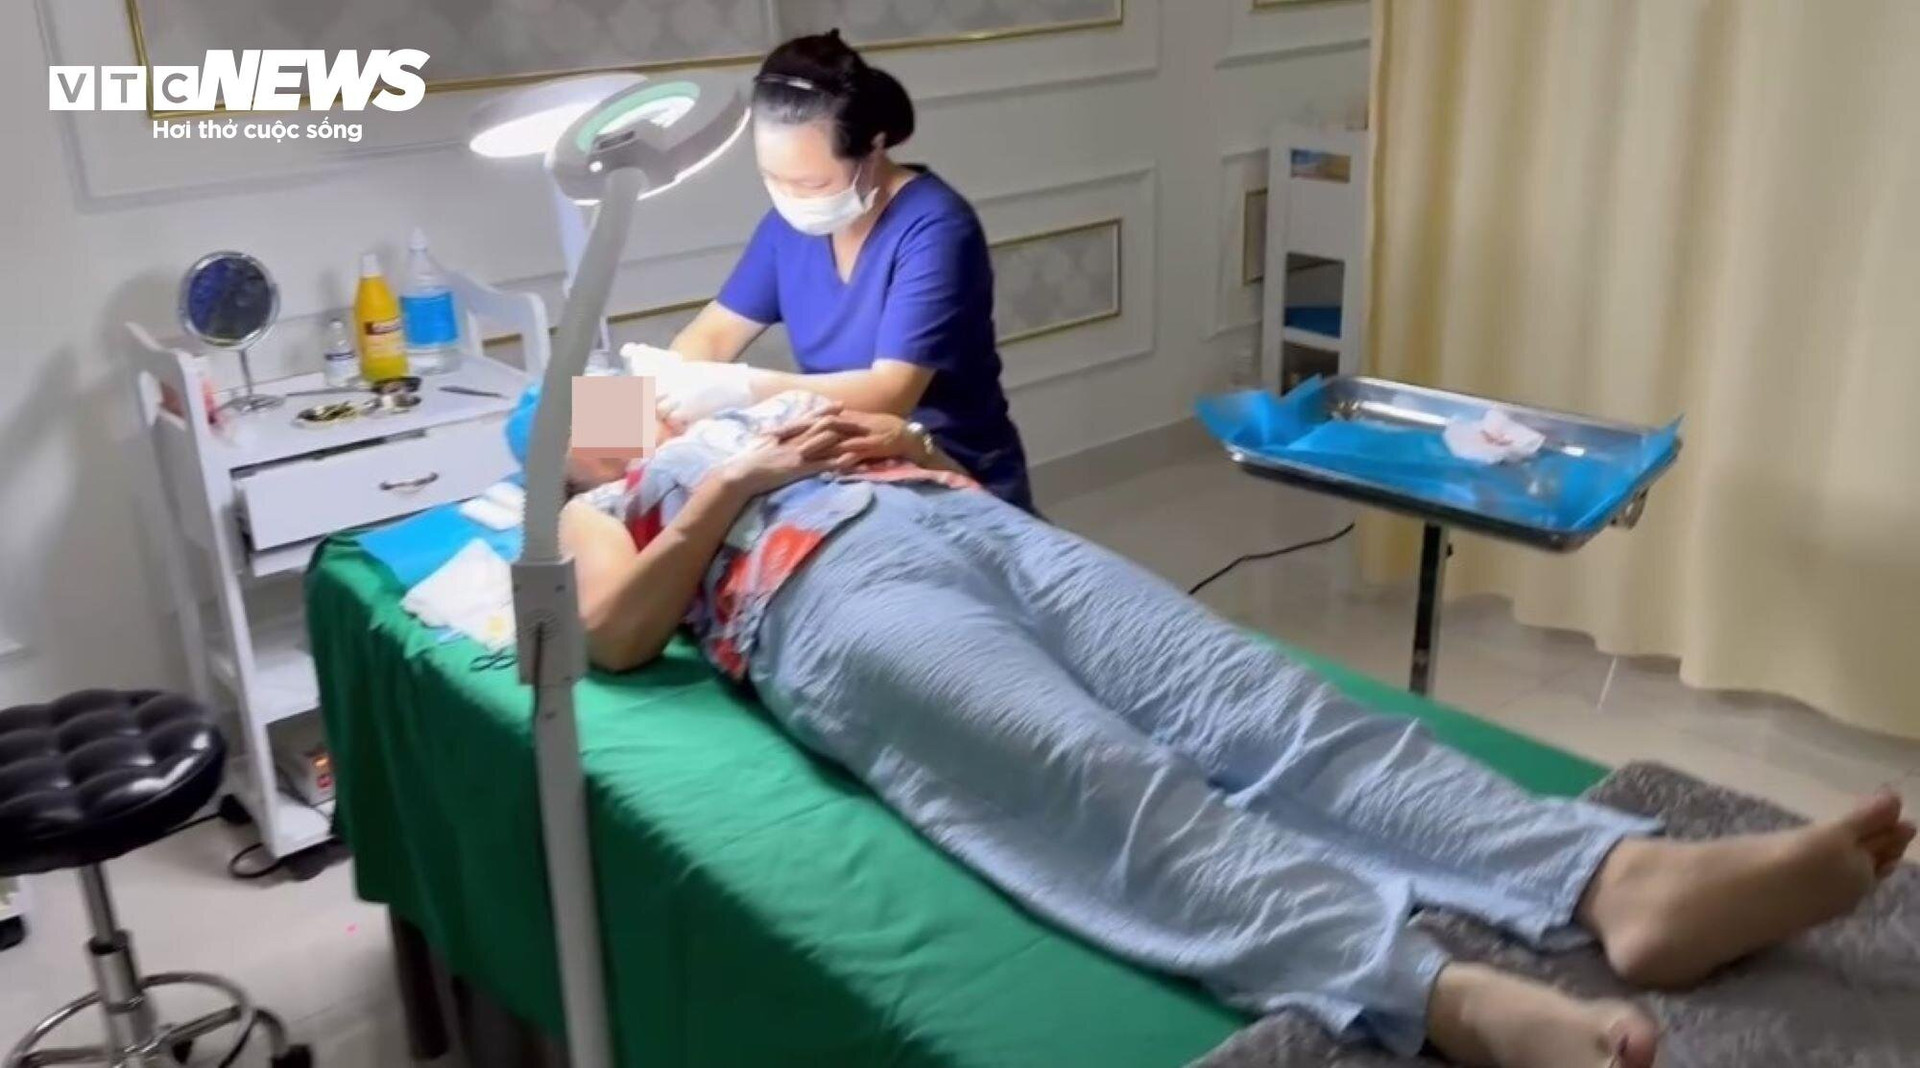 Nhân viên lao công phẫu thuật căng da mặt cho khách tại Thẩm mỹ Kangzin.